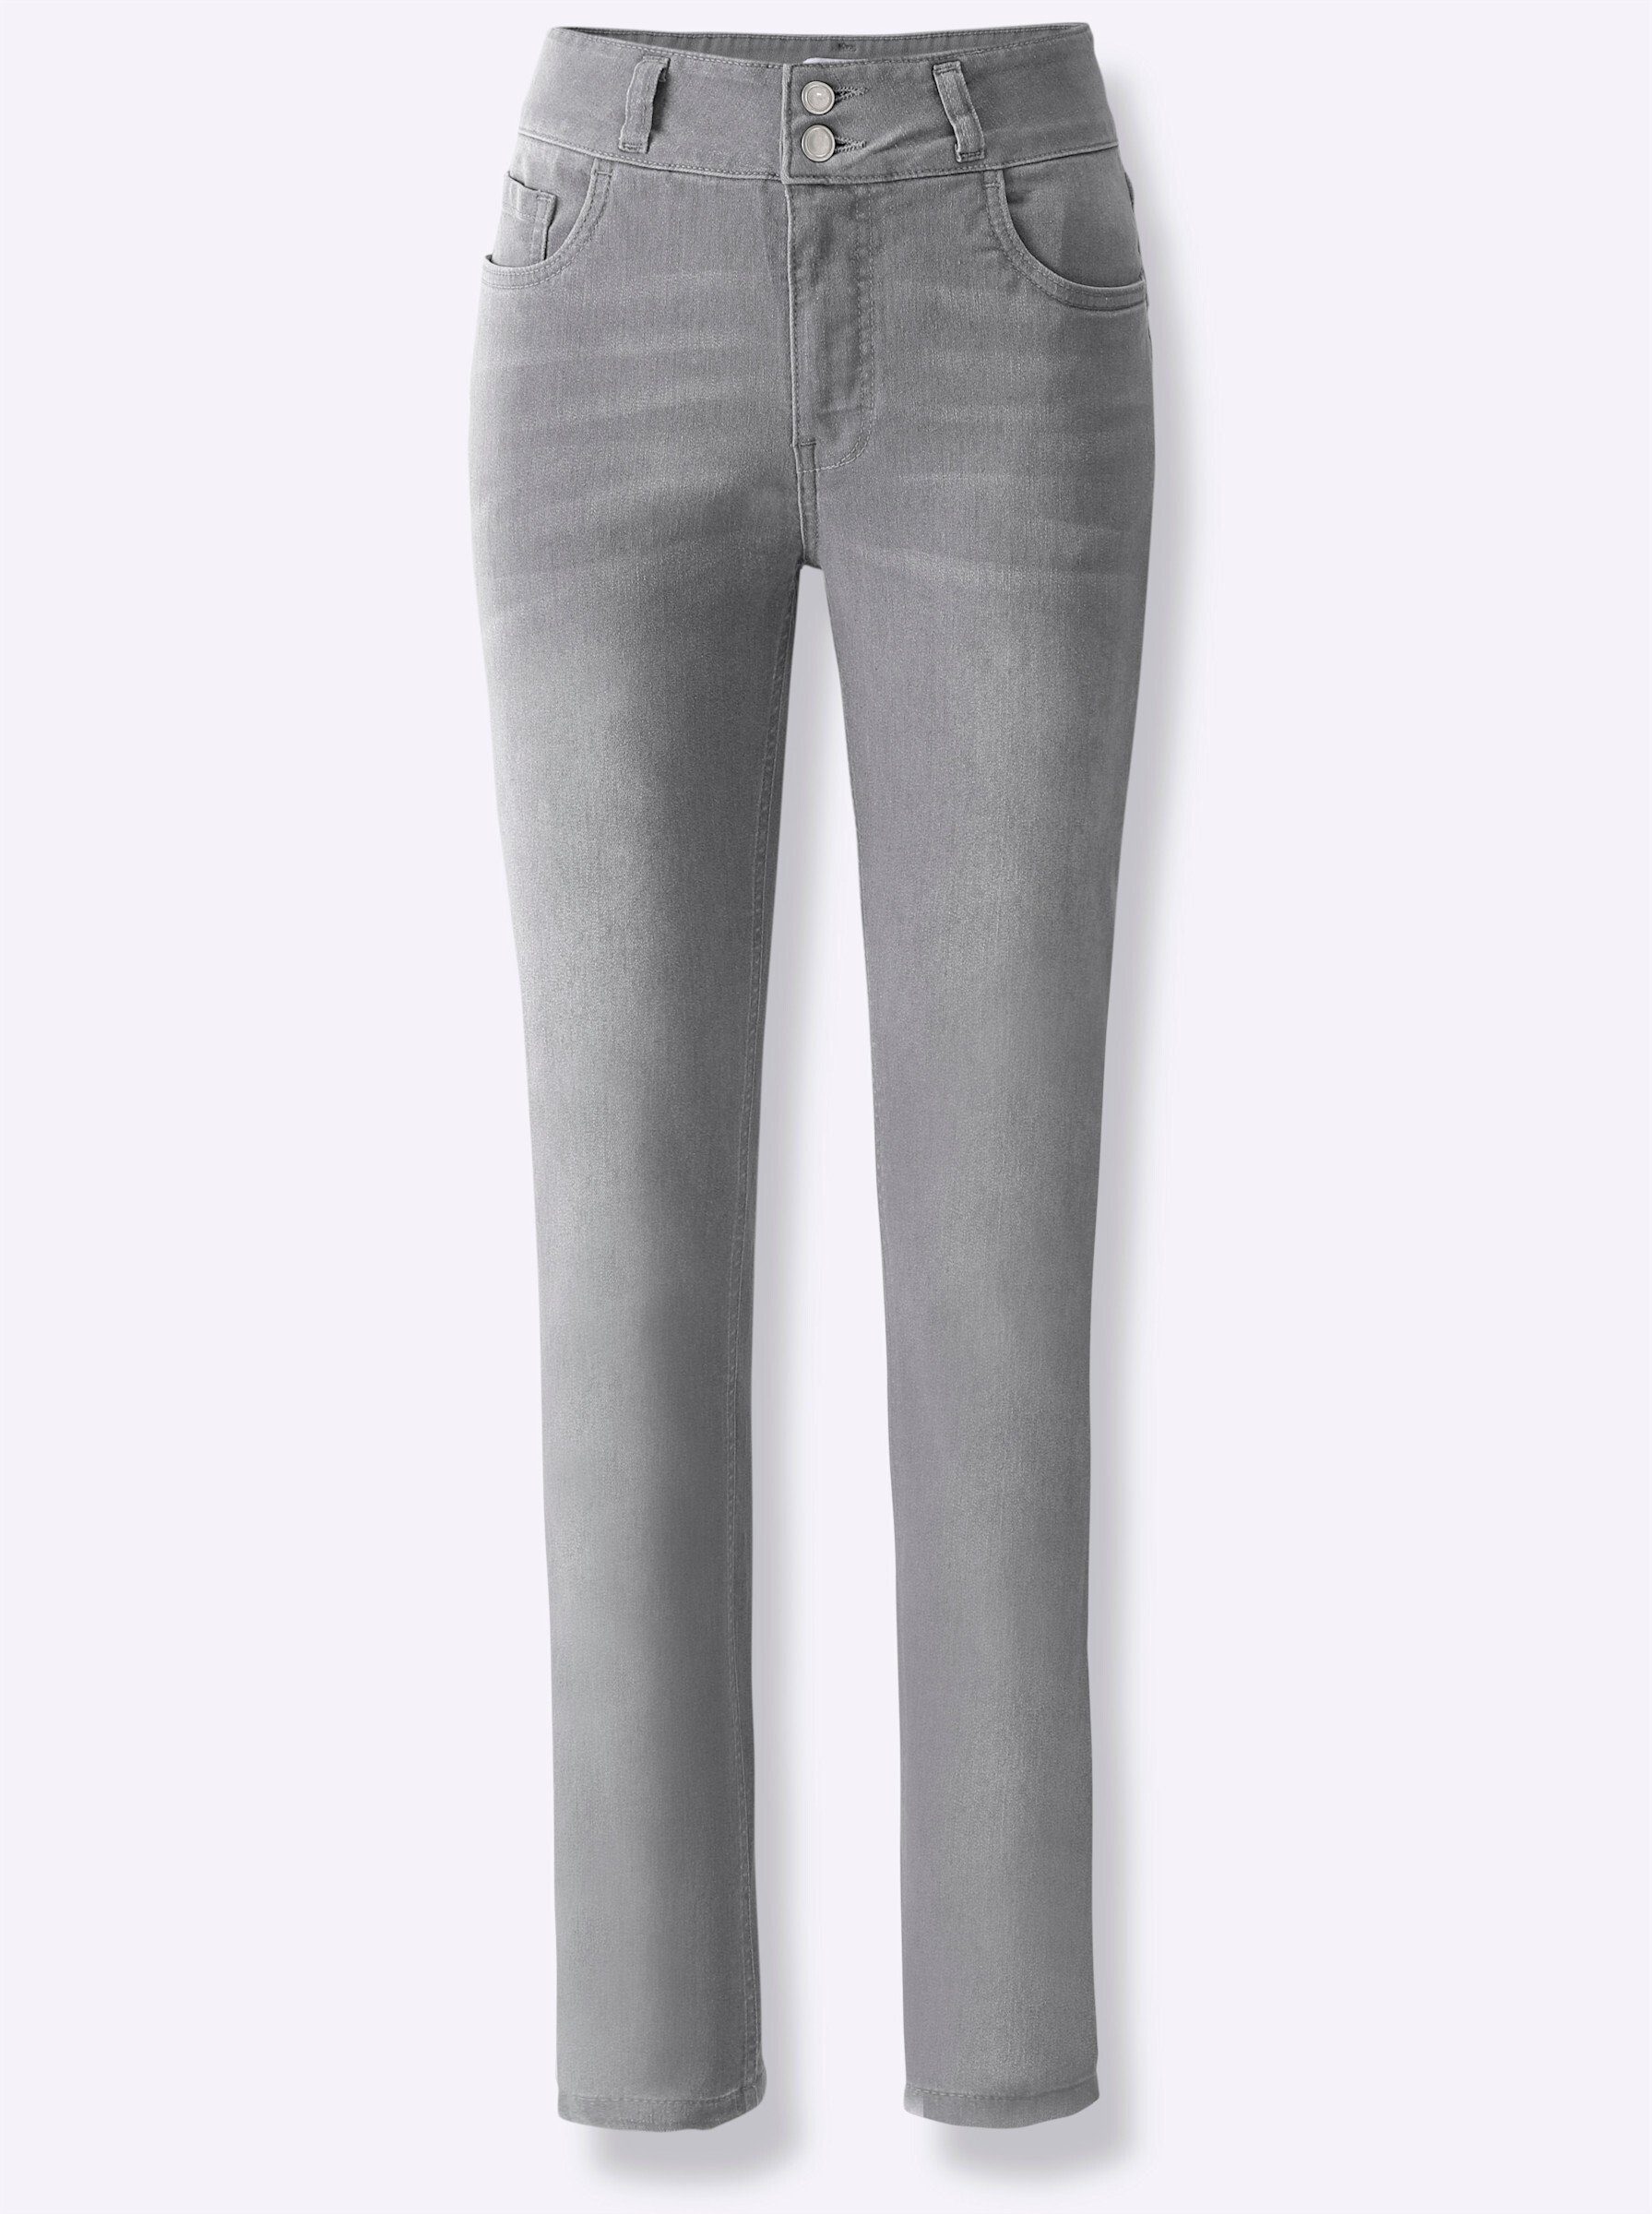 Jeans Bequeme WITT WEIDEN grey-denim light